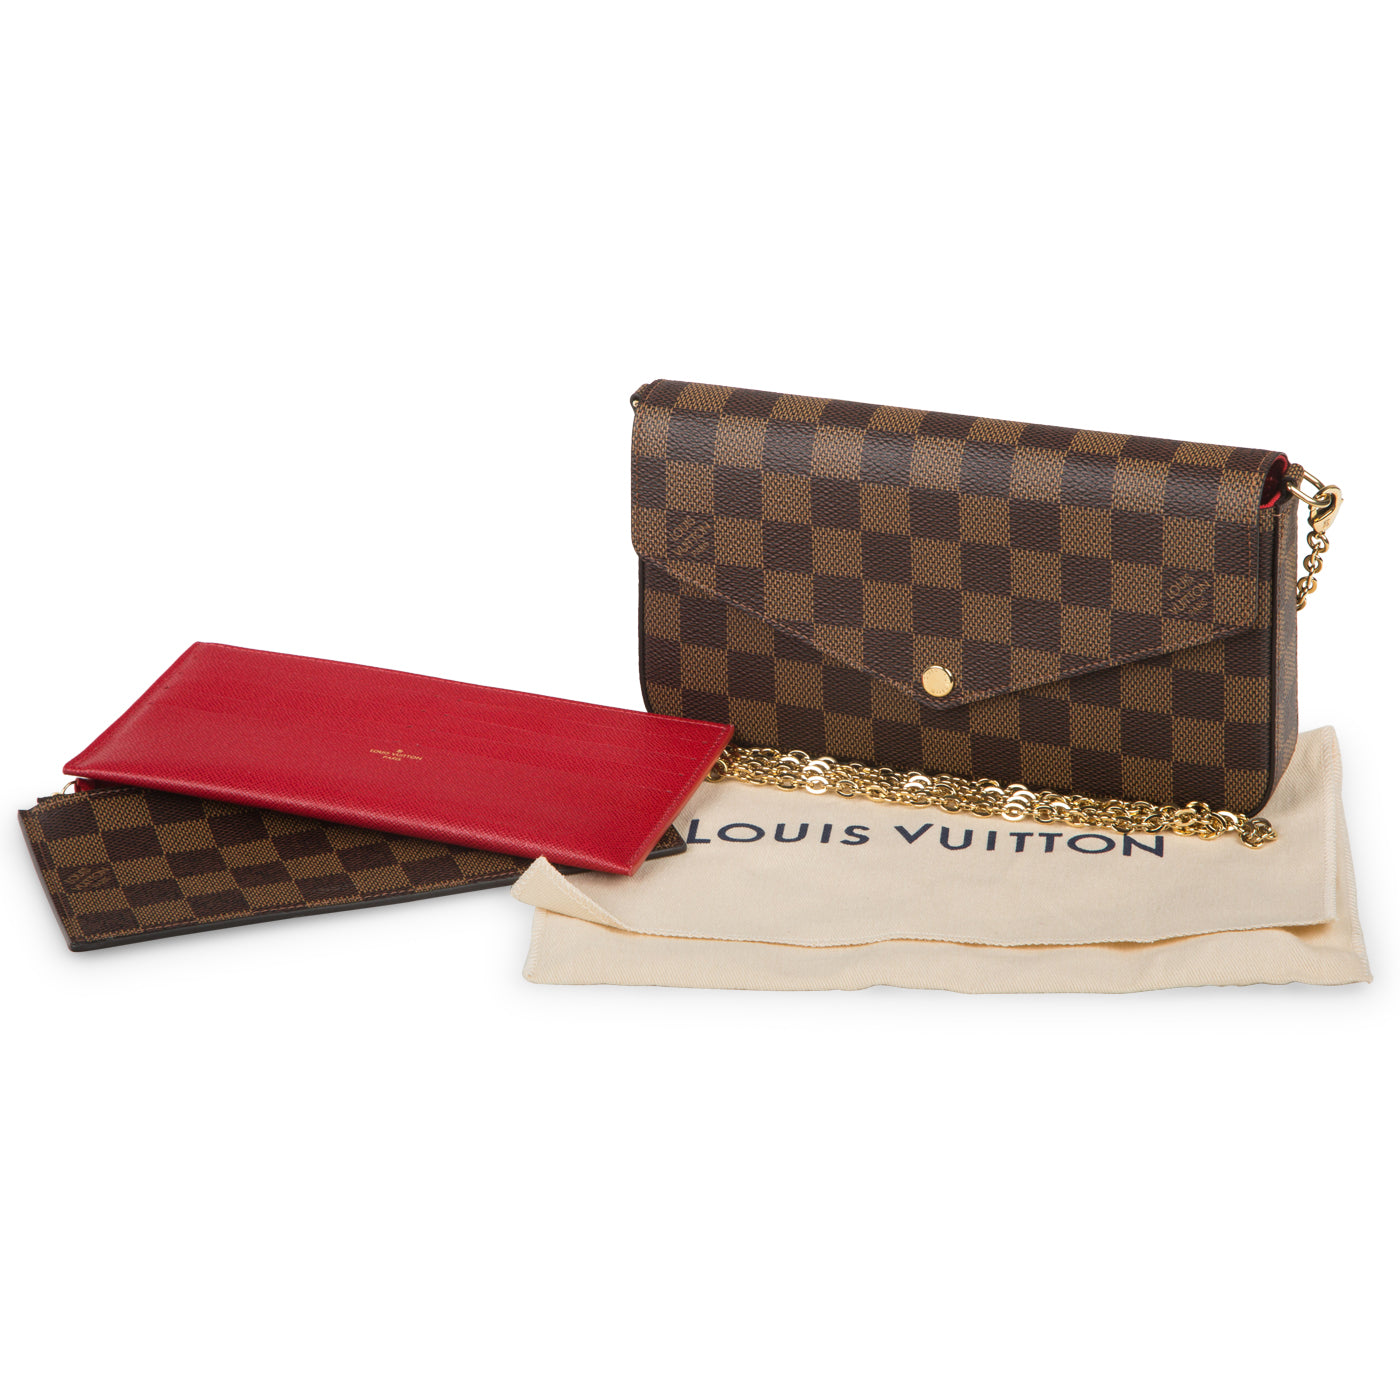 Louis Vuitton Pochette Felicie Review♥ 